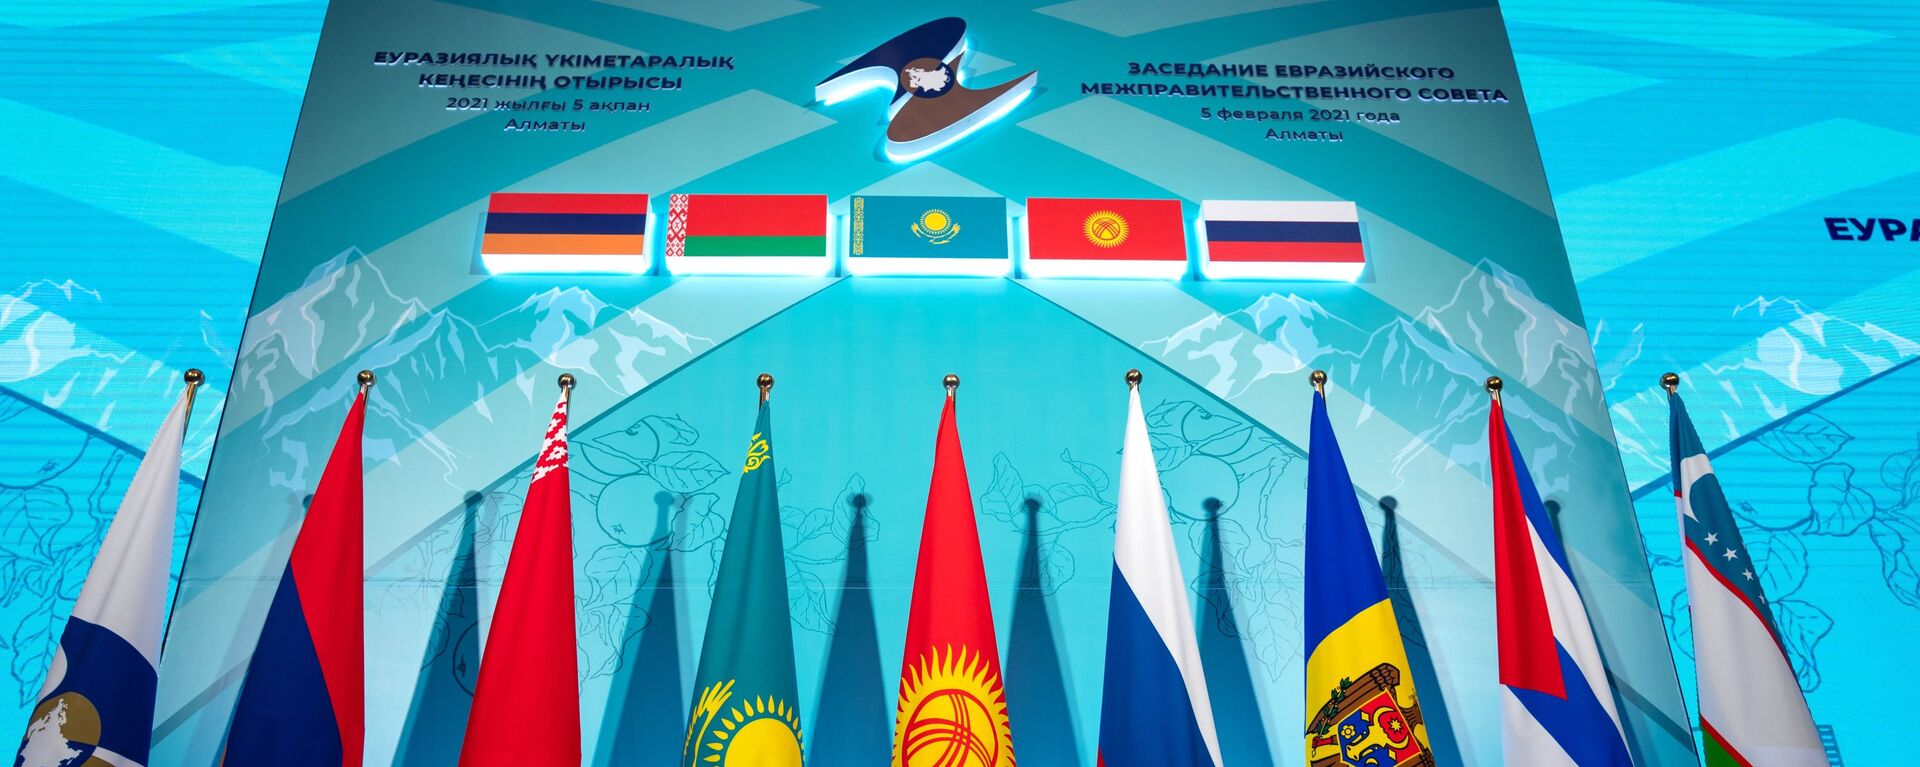 Заседание Евразийского межправительственного совета стран ЕАЭС - Sputnik Азербайджан, 1920, 27.04.2021